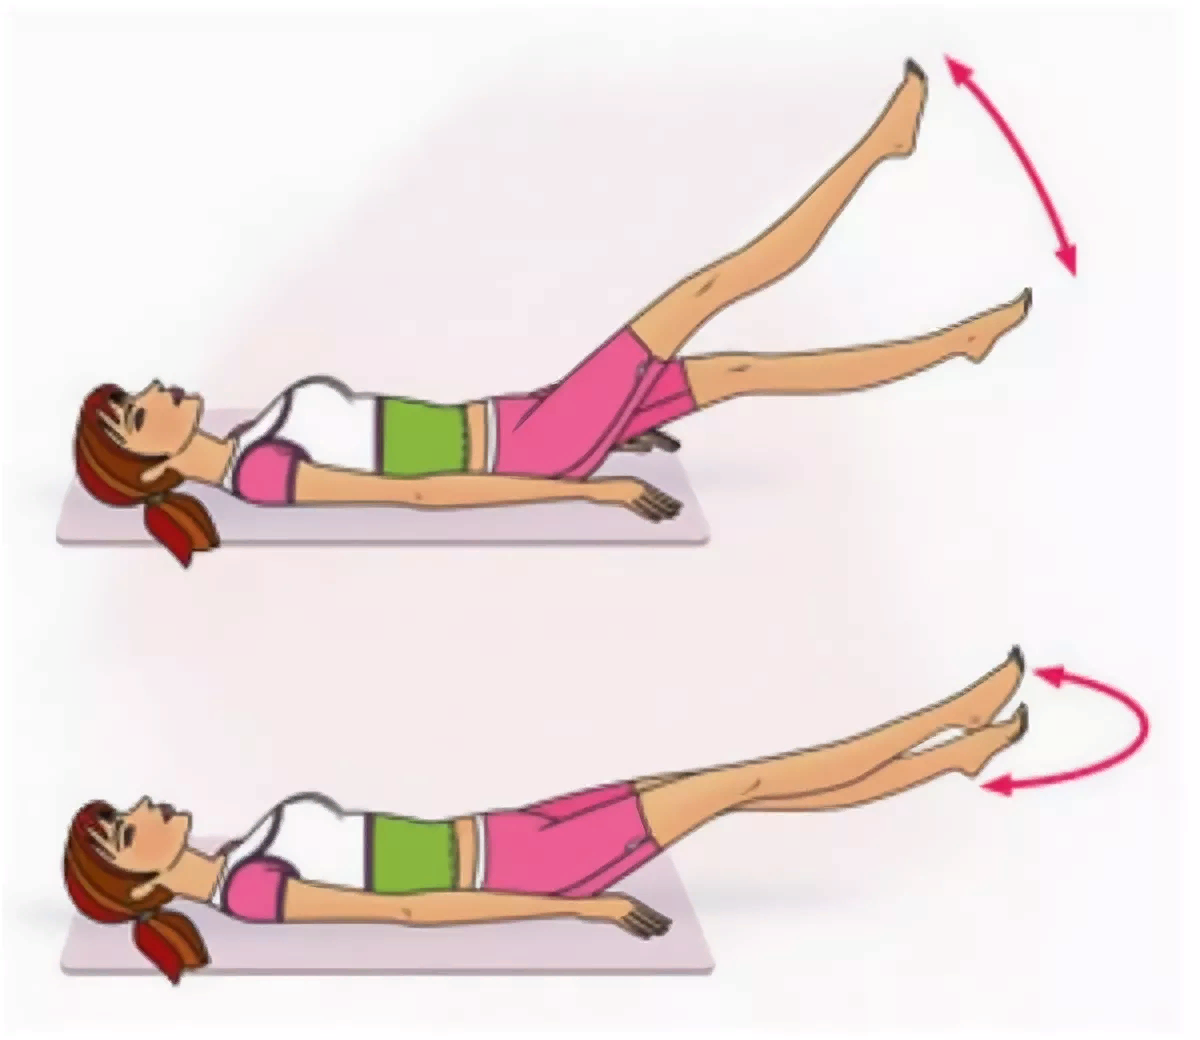 Упражнение лежа на полу, чтобы уменьшить усталость и напряжение в ногах, а заодно и проработать пресс